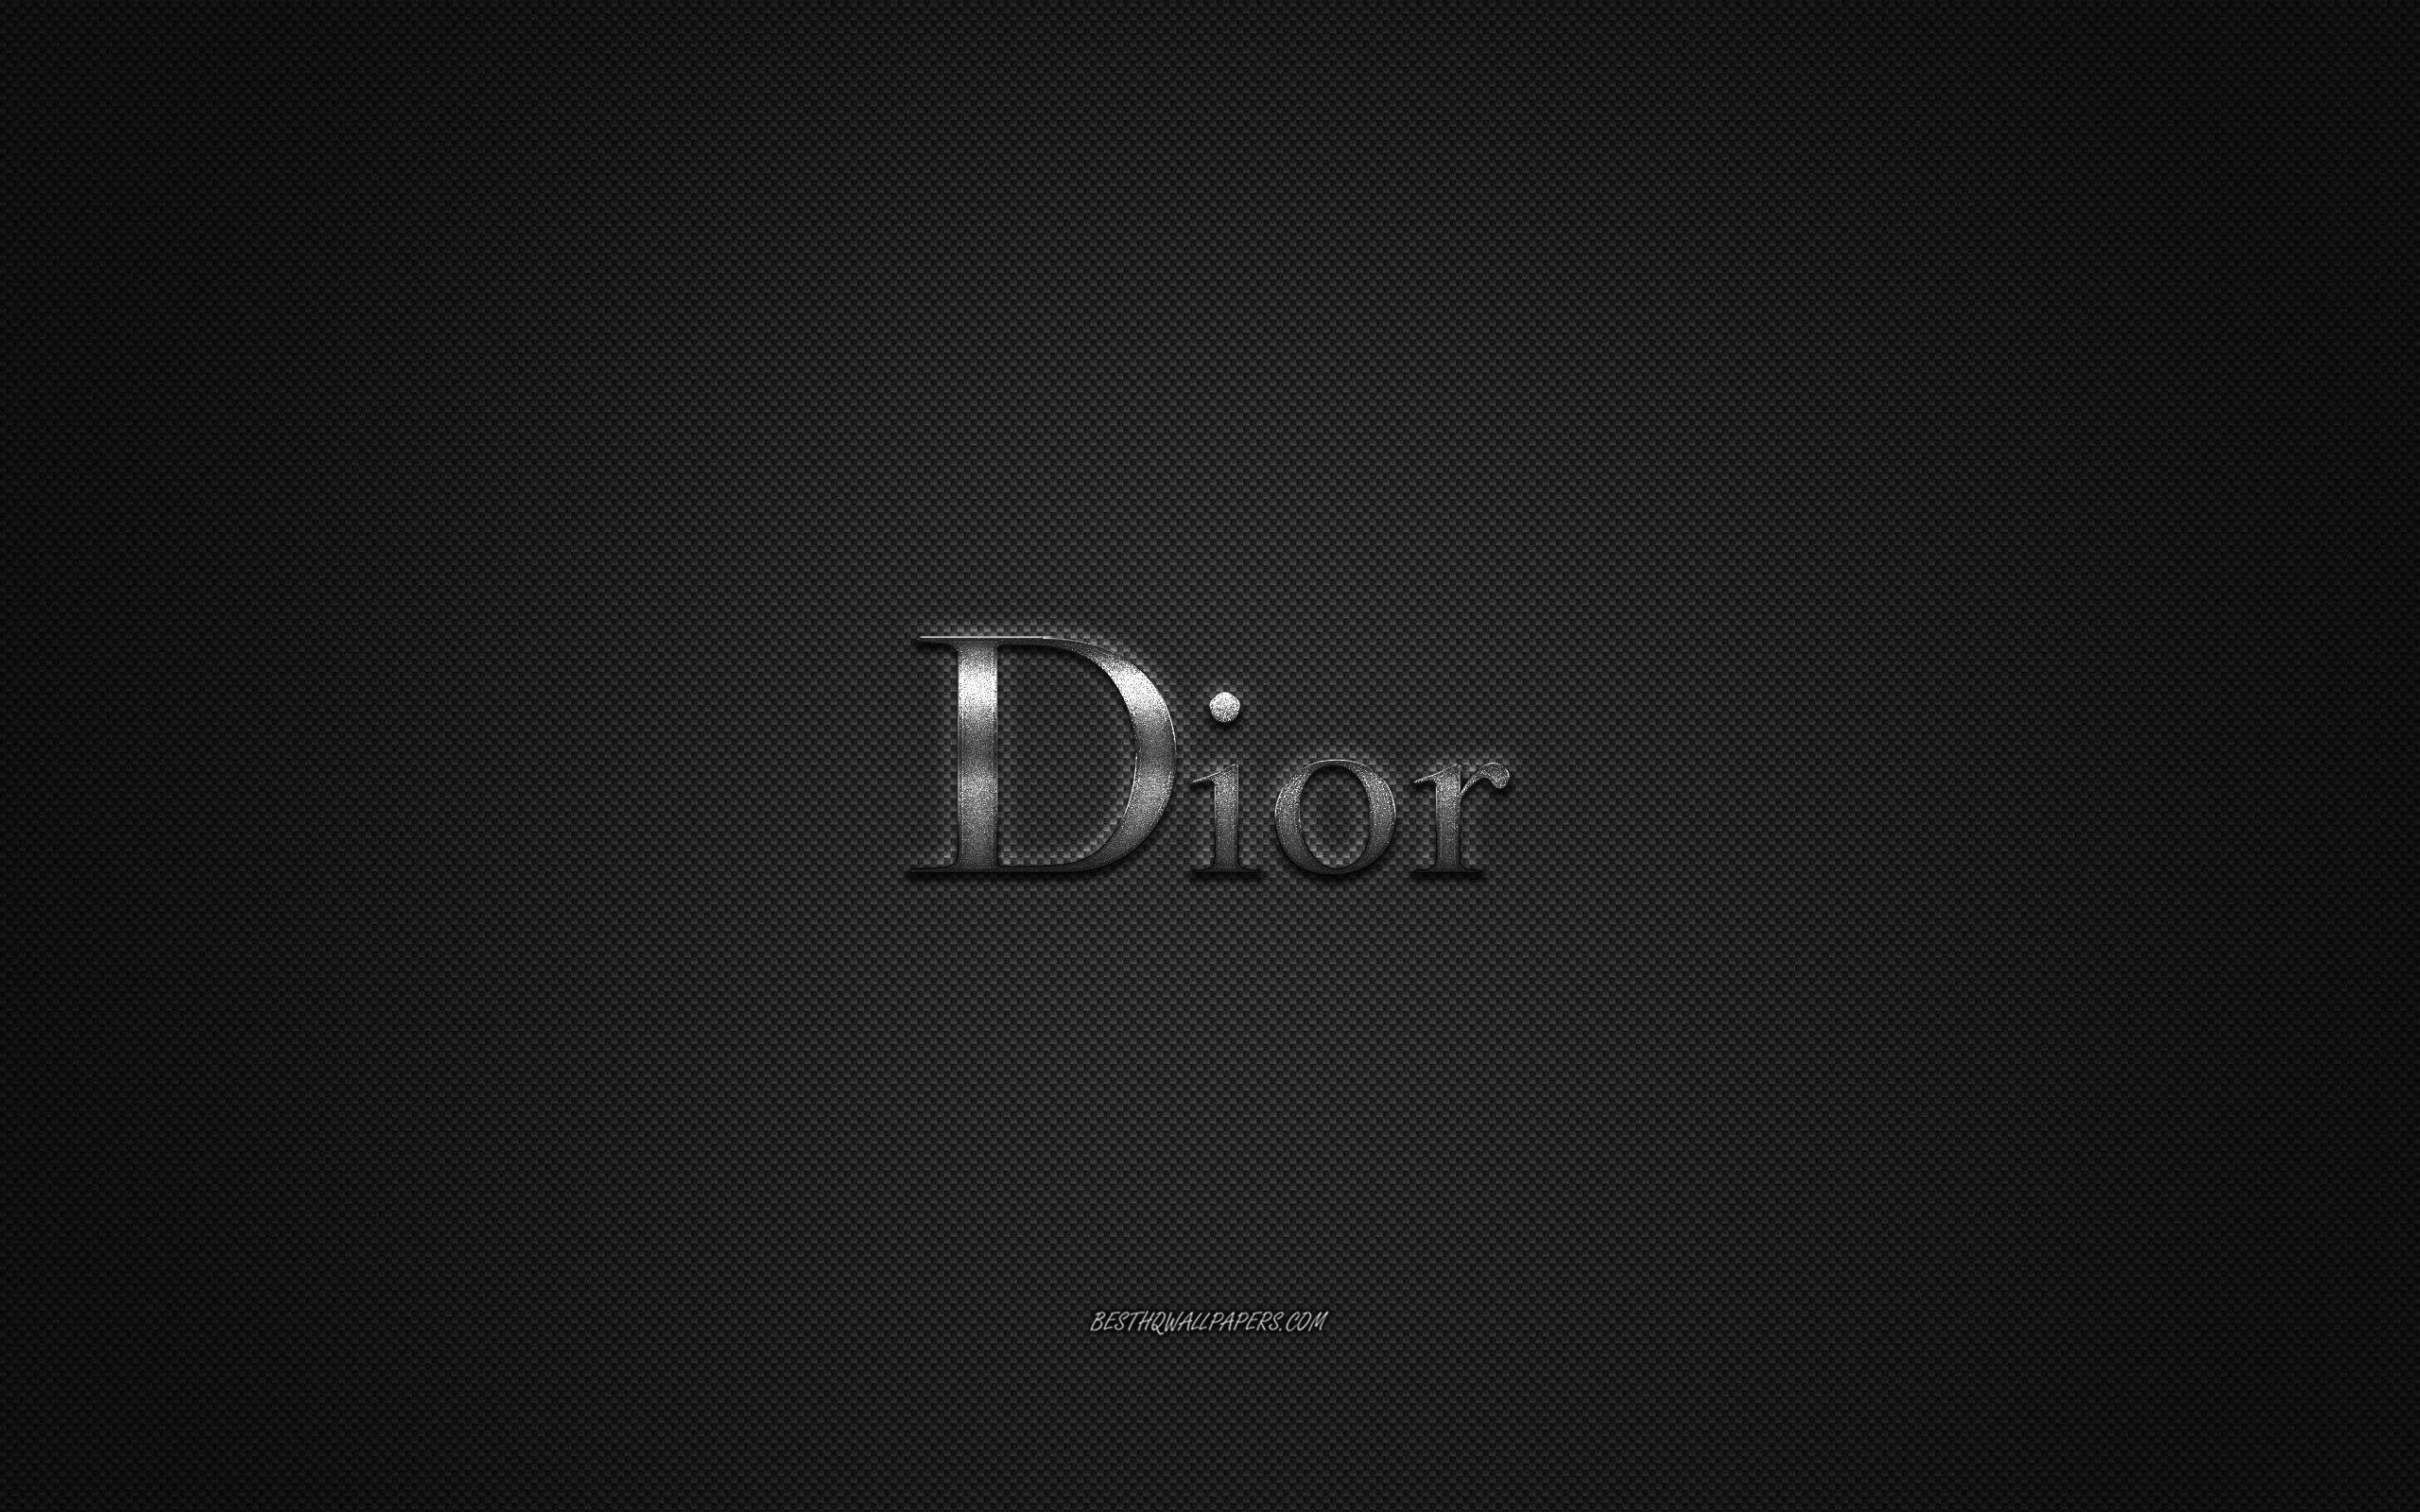 Dior logo wallpapers: Khám phá bộ sưu tập hình nền Dior logo độc đáo và tinh tế, mang lại cho điện thoại của bạn phong cách thời trang đẳng cấp.